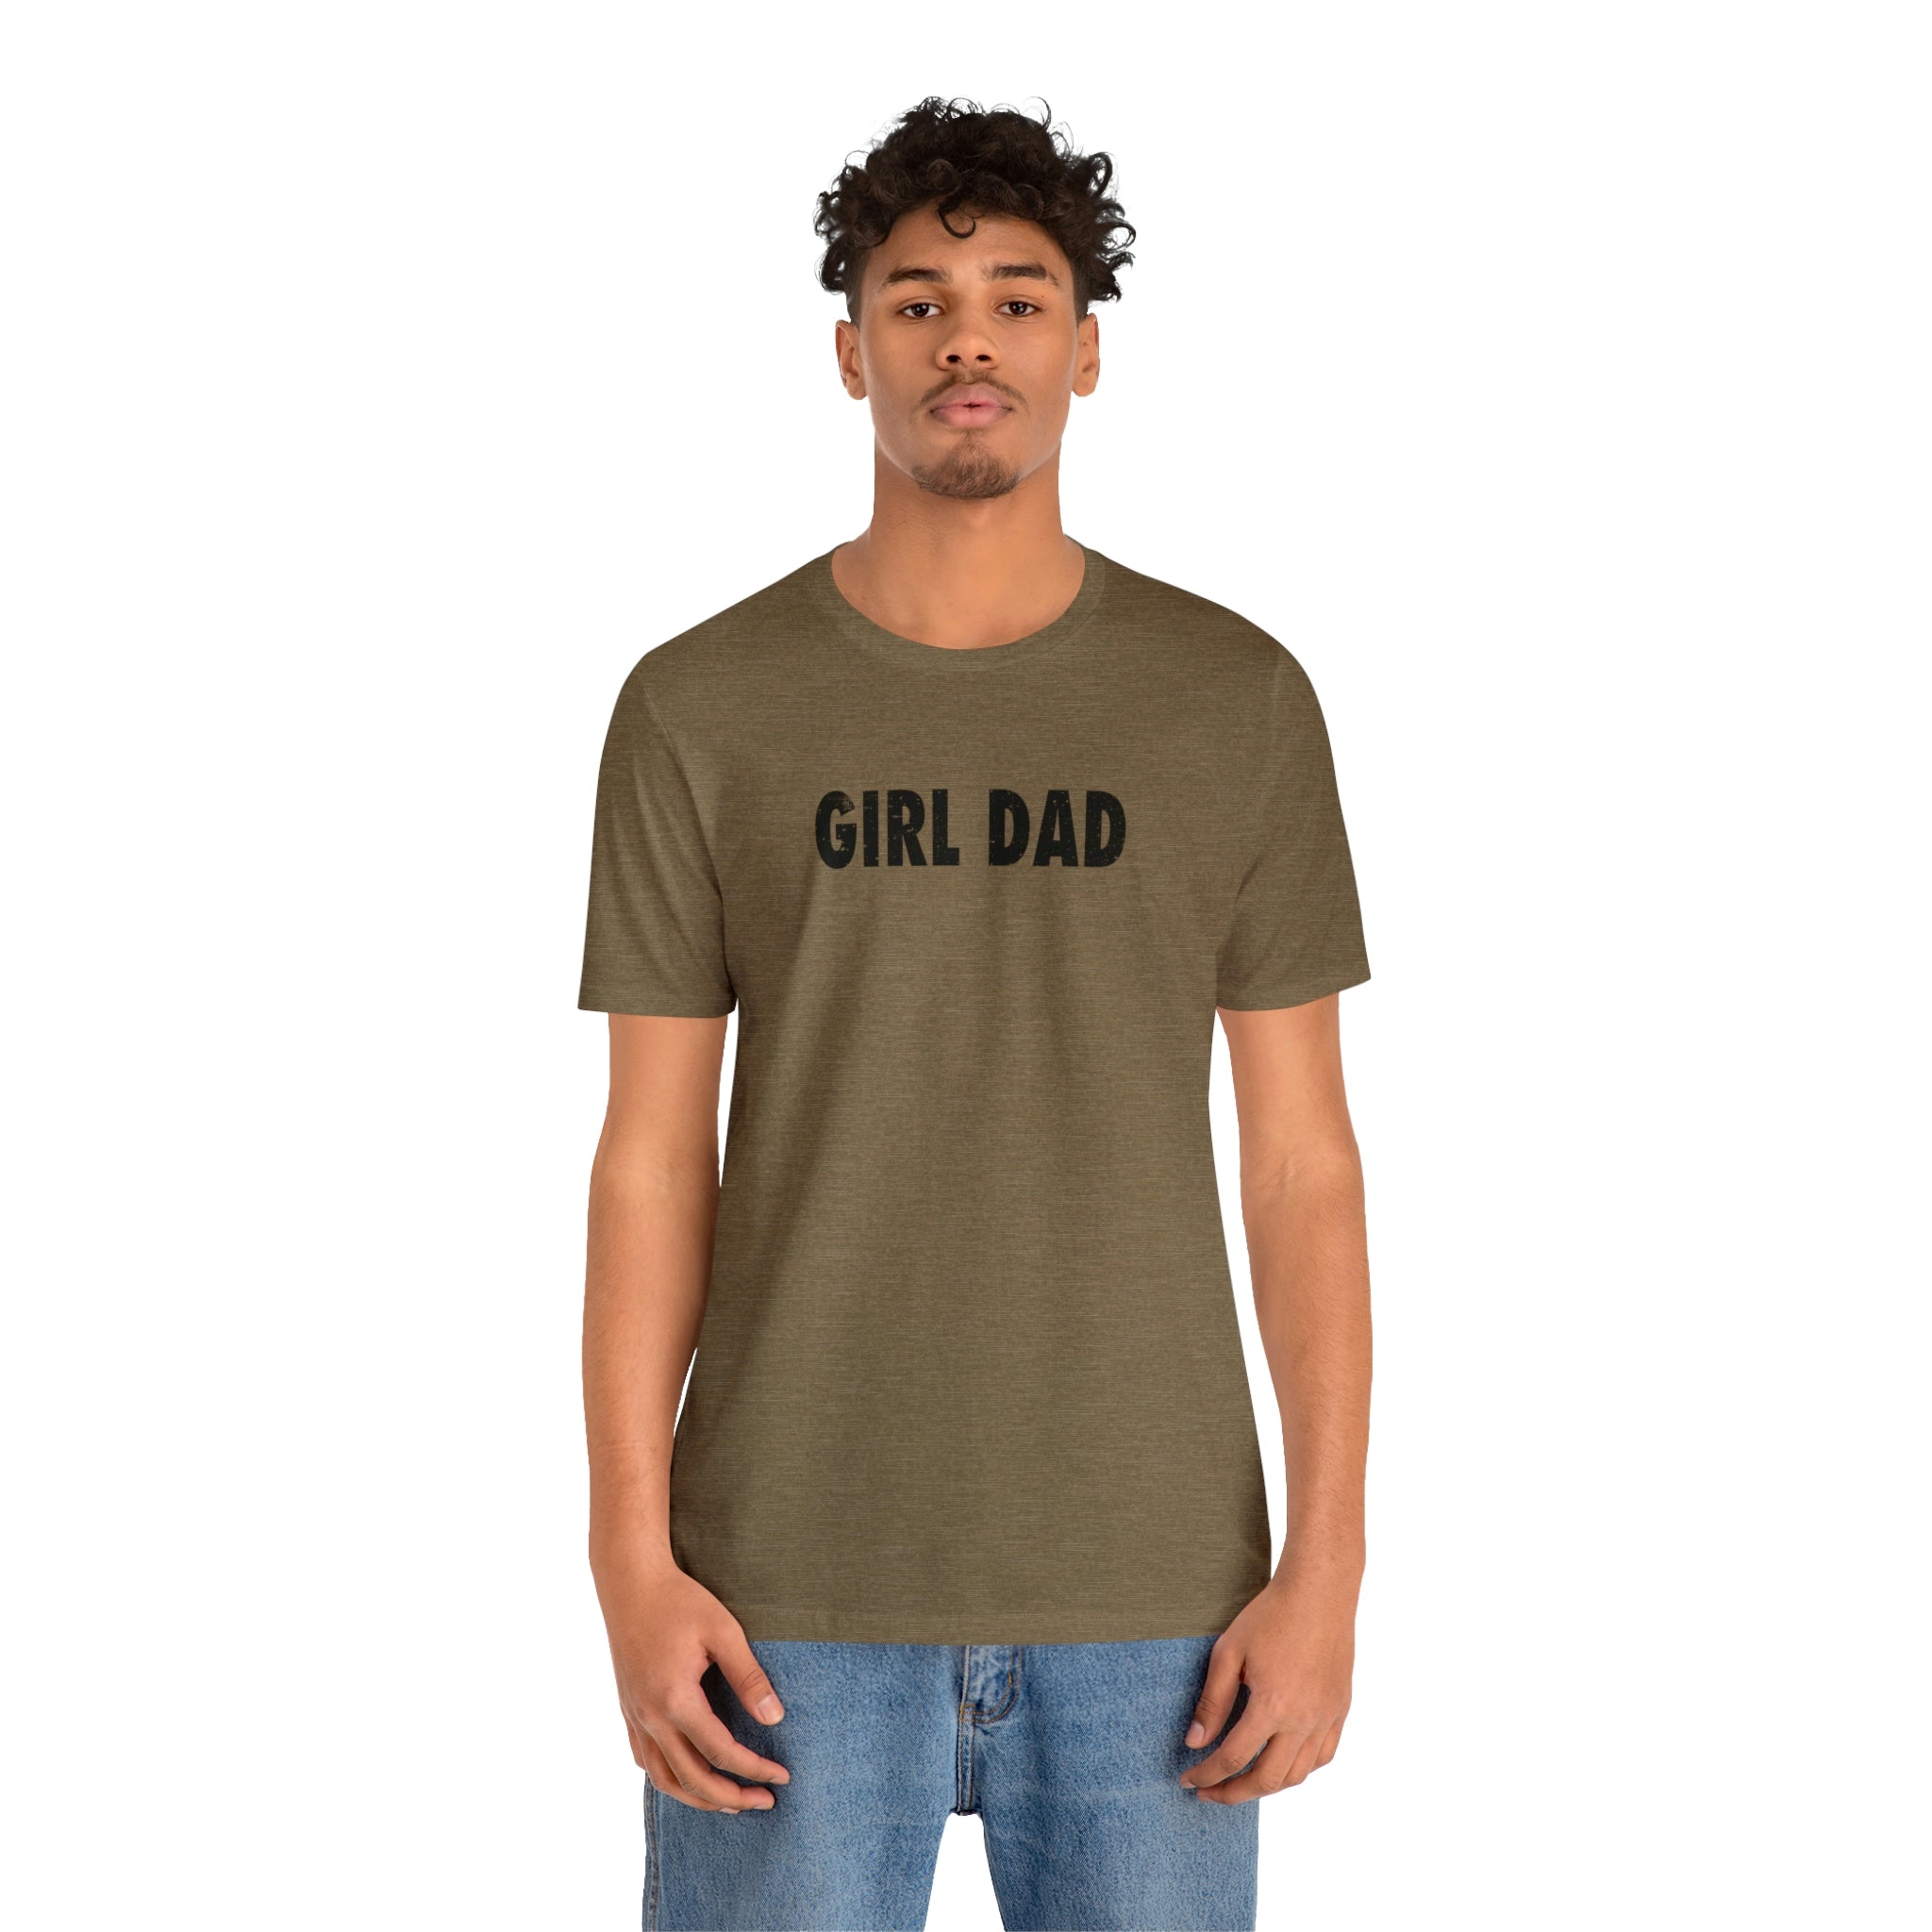 Girl Dad Shirt